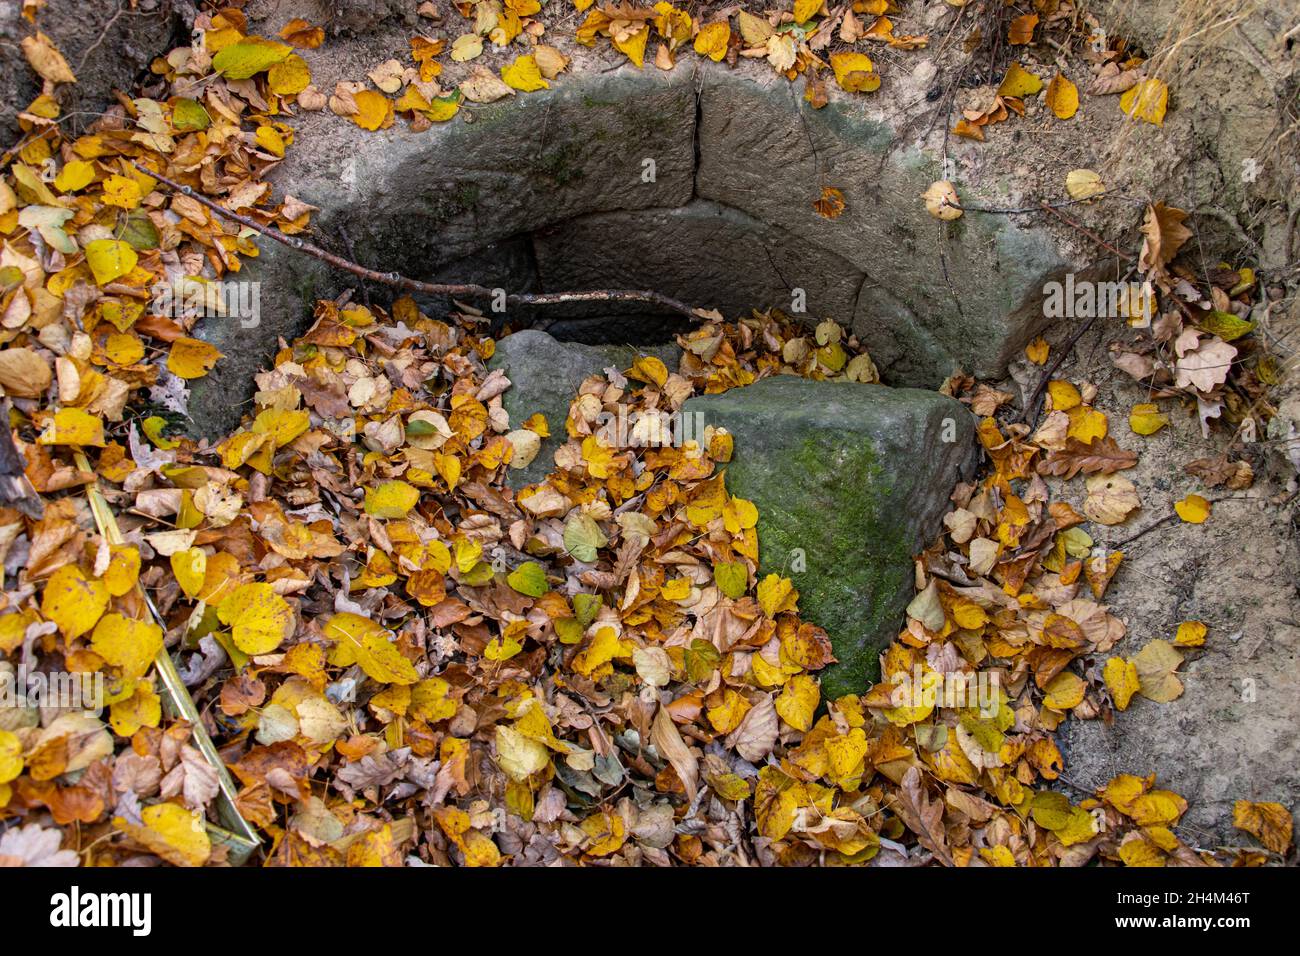 Un viejo pozo con una pared de piedras dañadas está cubierto de hojas de otoño Foto de stock